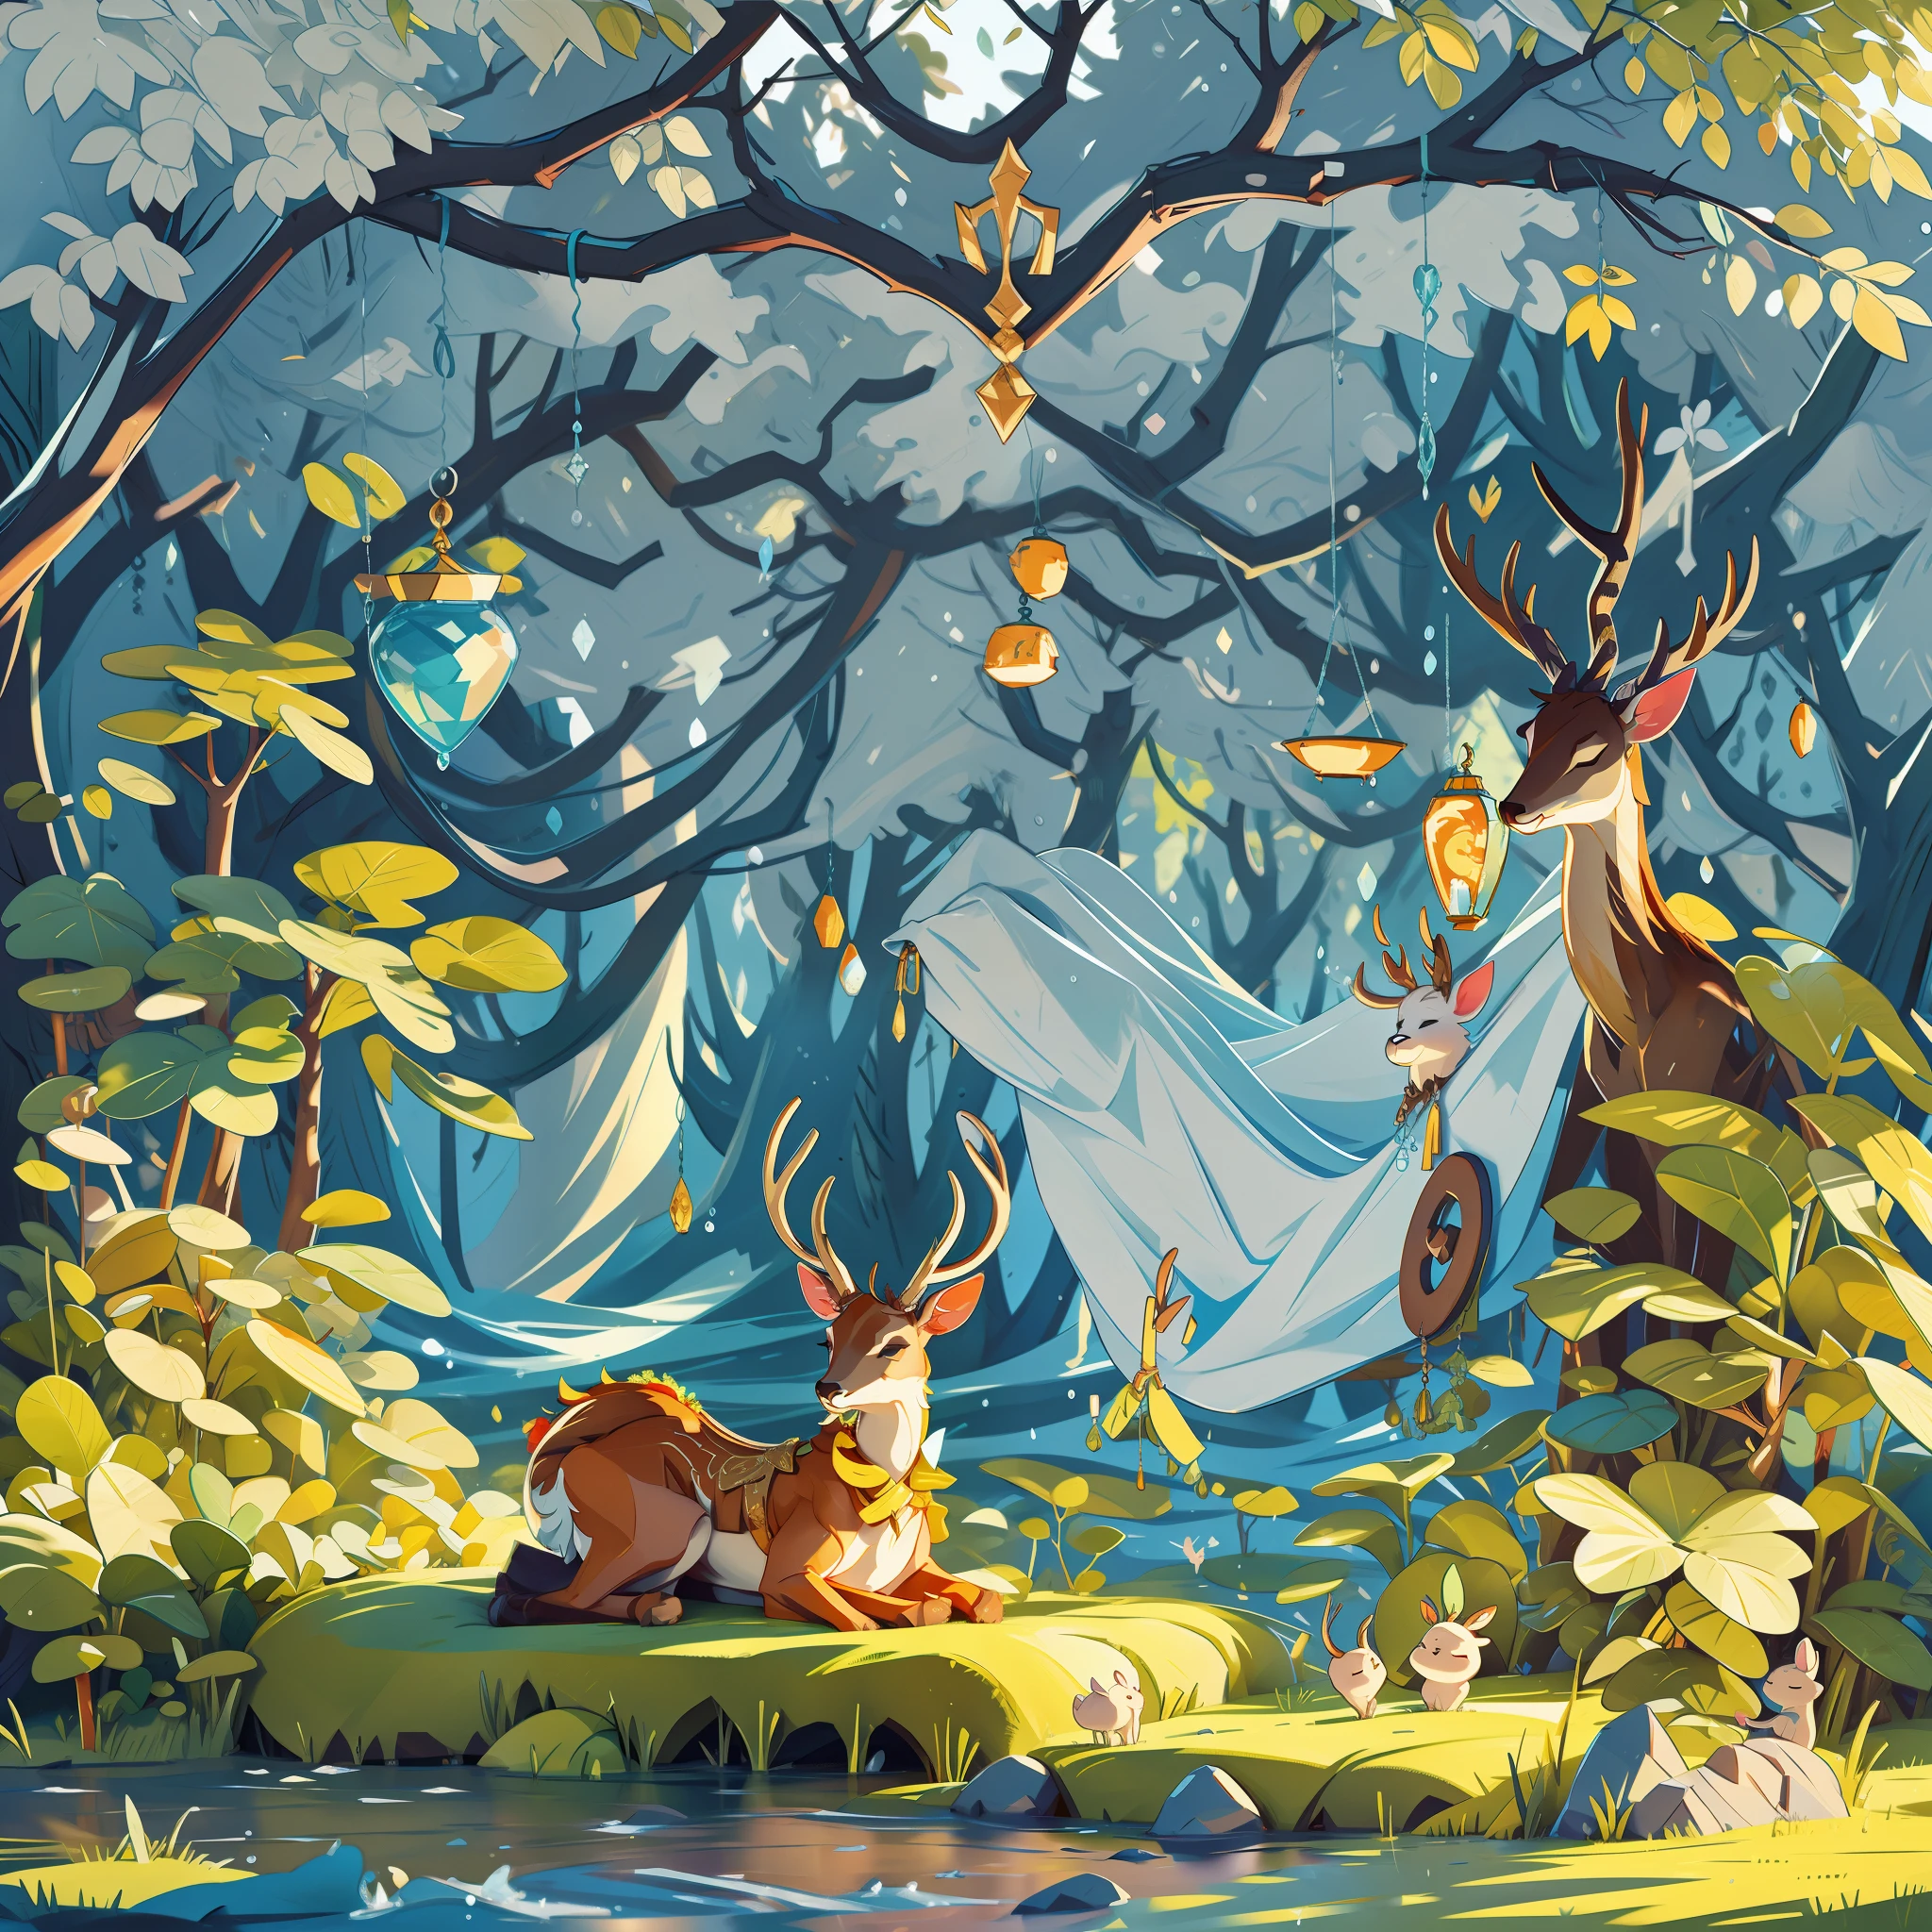 鹿在森林深处睡着，沐浴着阳光. 即使爱的泪水落下也无声无息, 杰作, 最好的质量